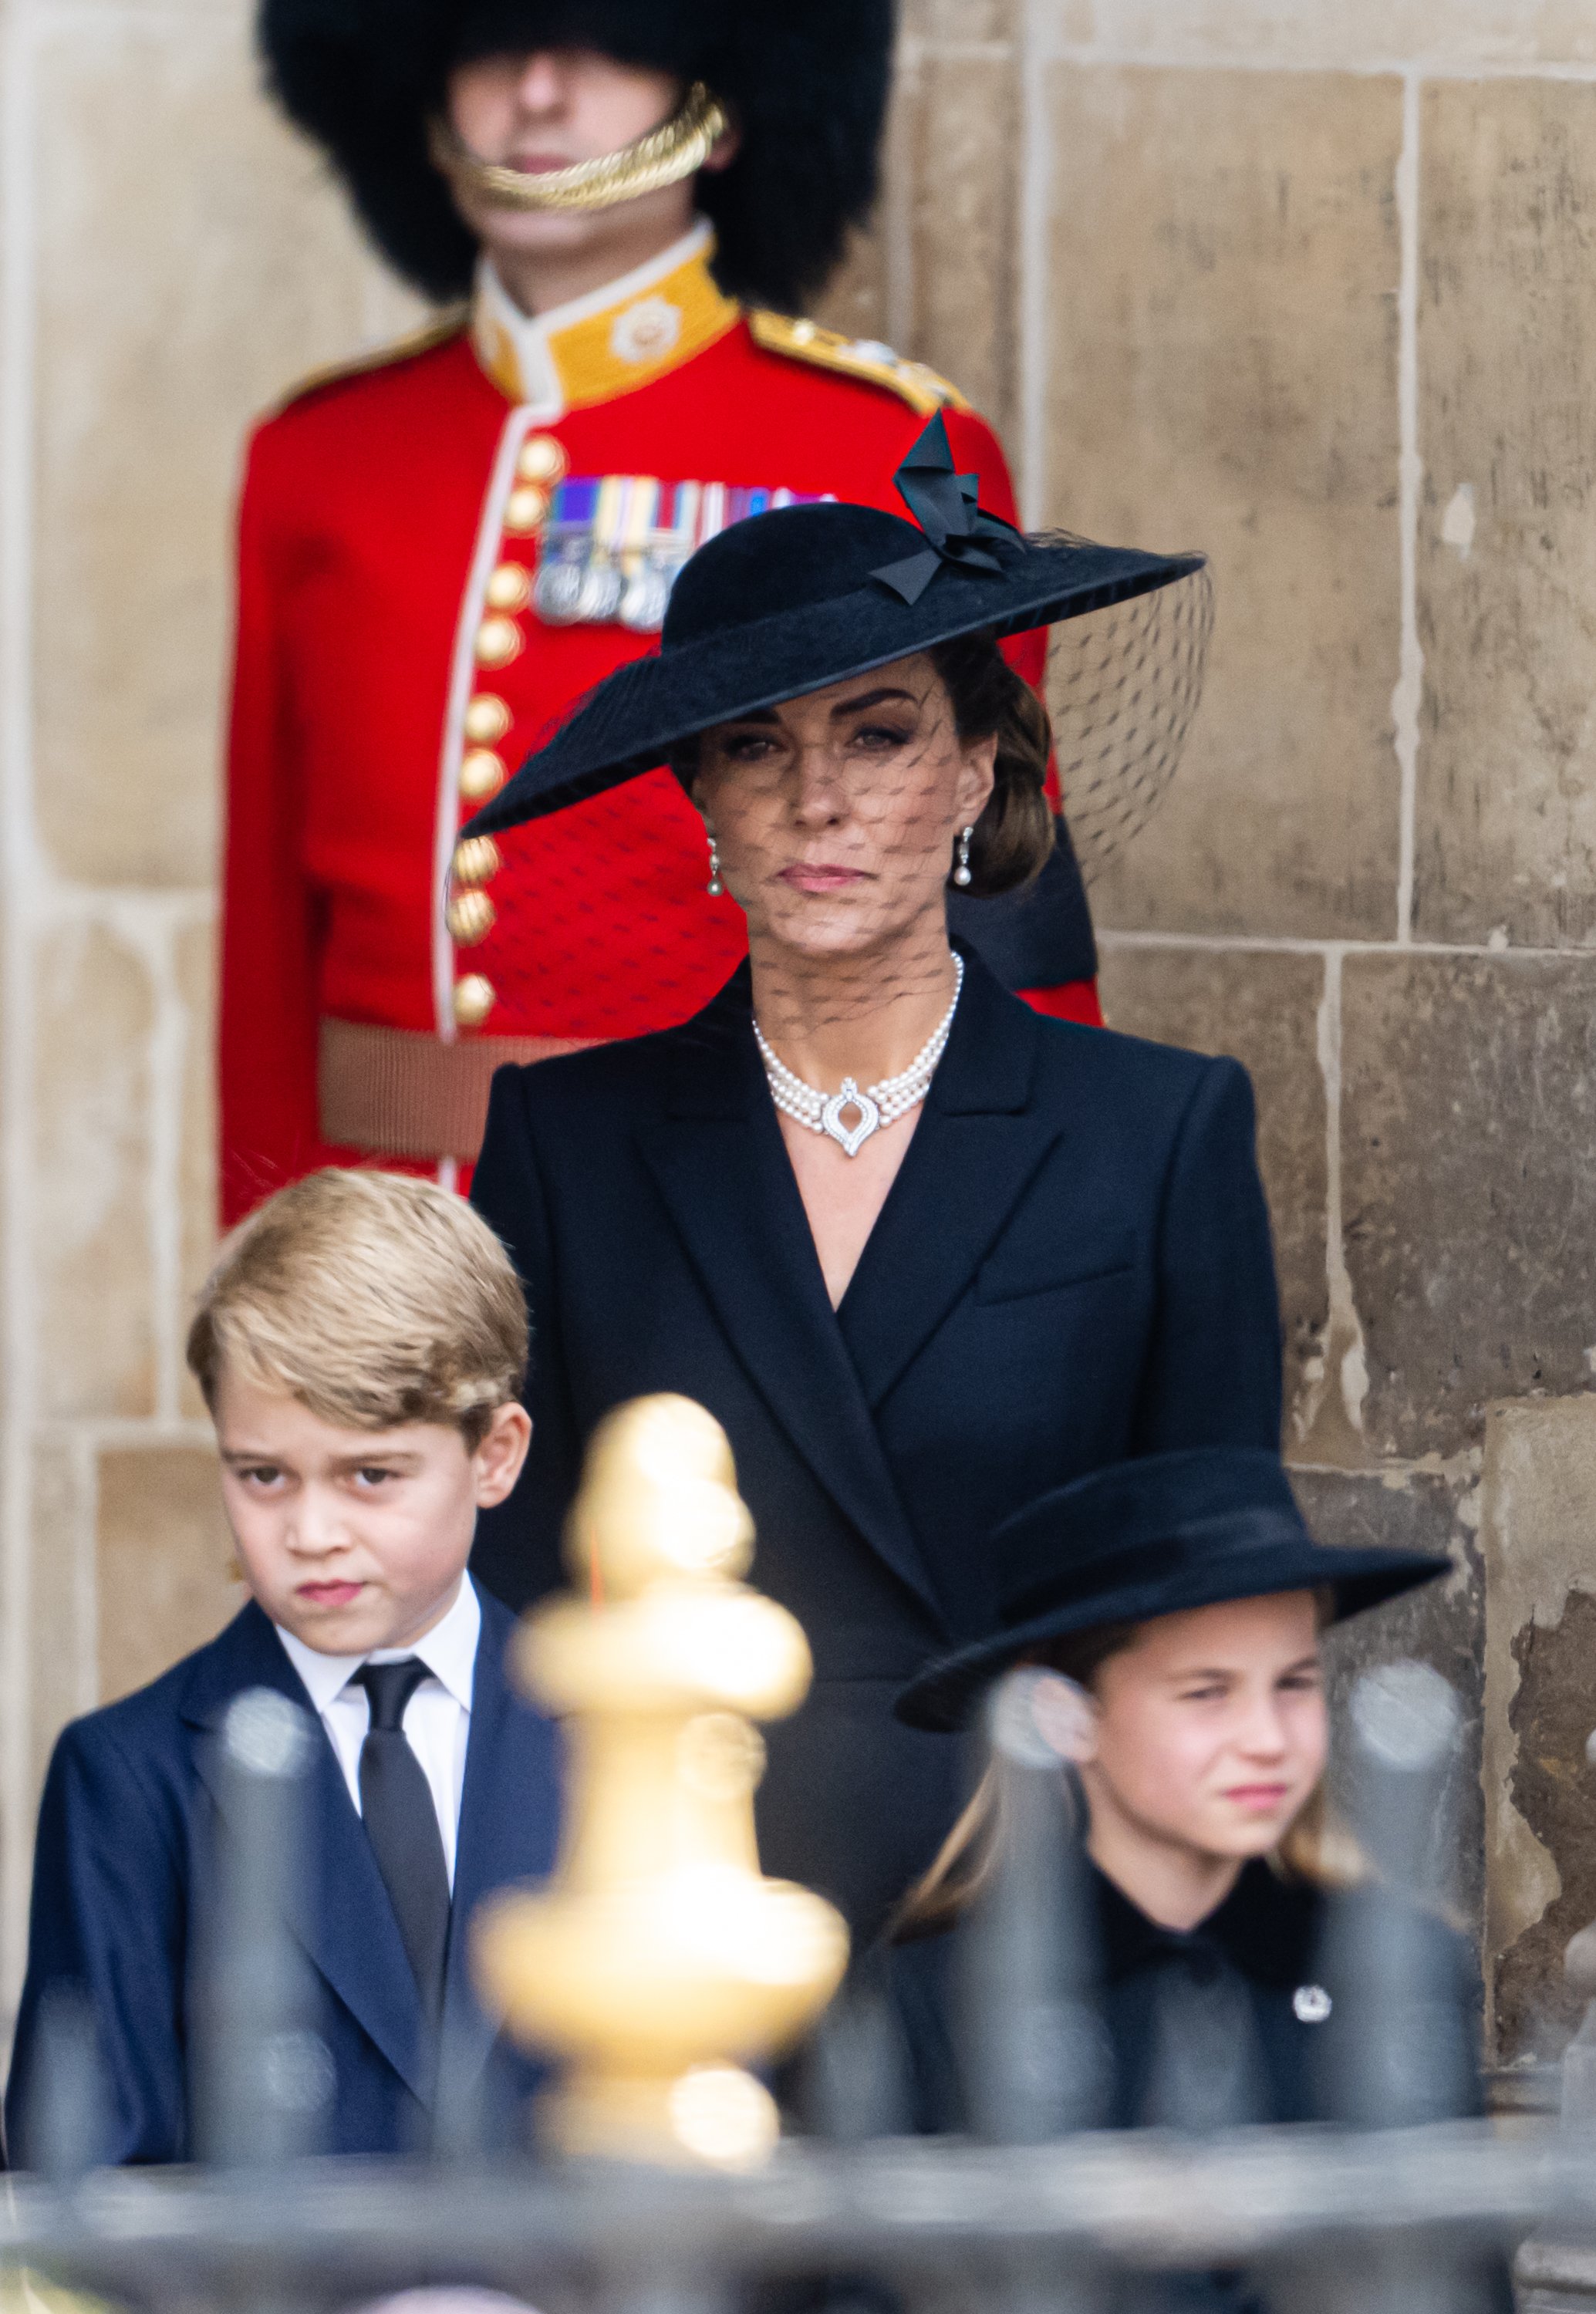 El príncipe George de Gales, Catherine, princesa de Gales, y la princesa Charlotte de Gales, durante el funeral de estado de la reina Elizabeth II en la Abadía de Westminster, el 19 de septiembre de 2022 en Londres, Inglaterra. | Foto: Getty Images